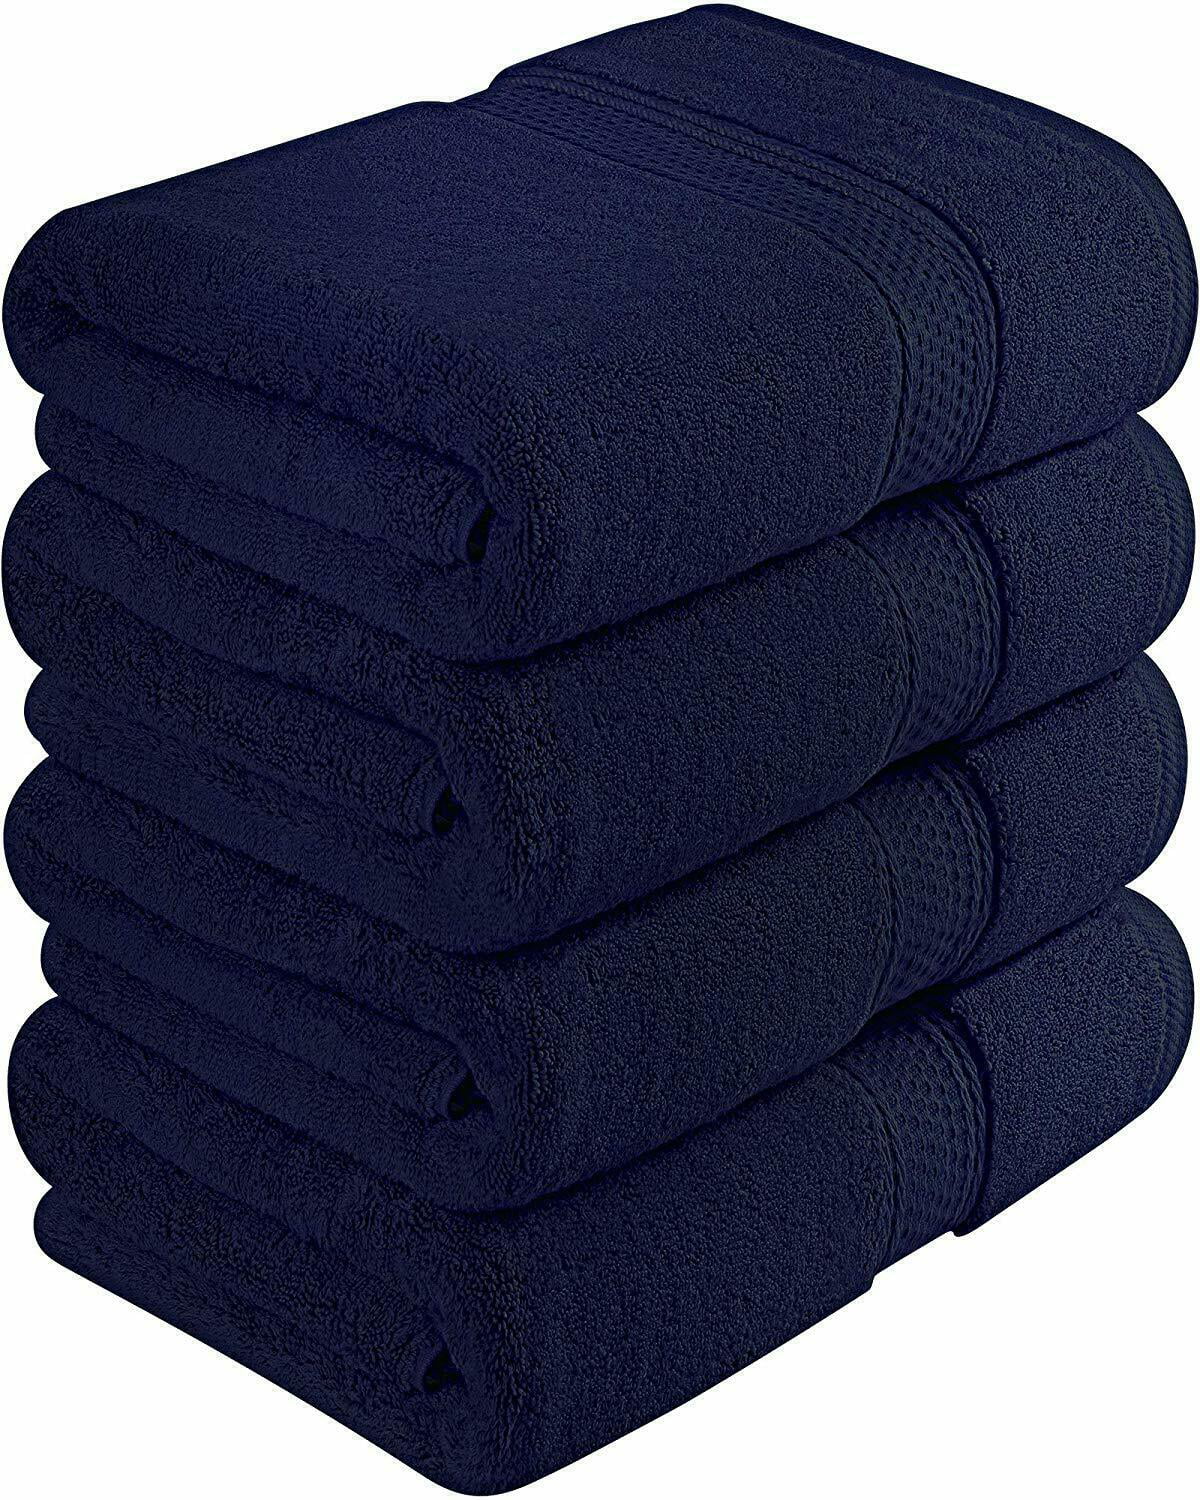 Bath Towels Cotton Towel Set 27x54 Inches 700 GSM Absorbent Lot Utopia Towels 